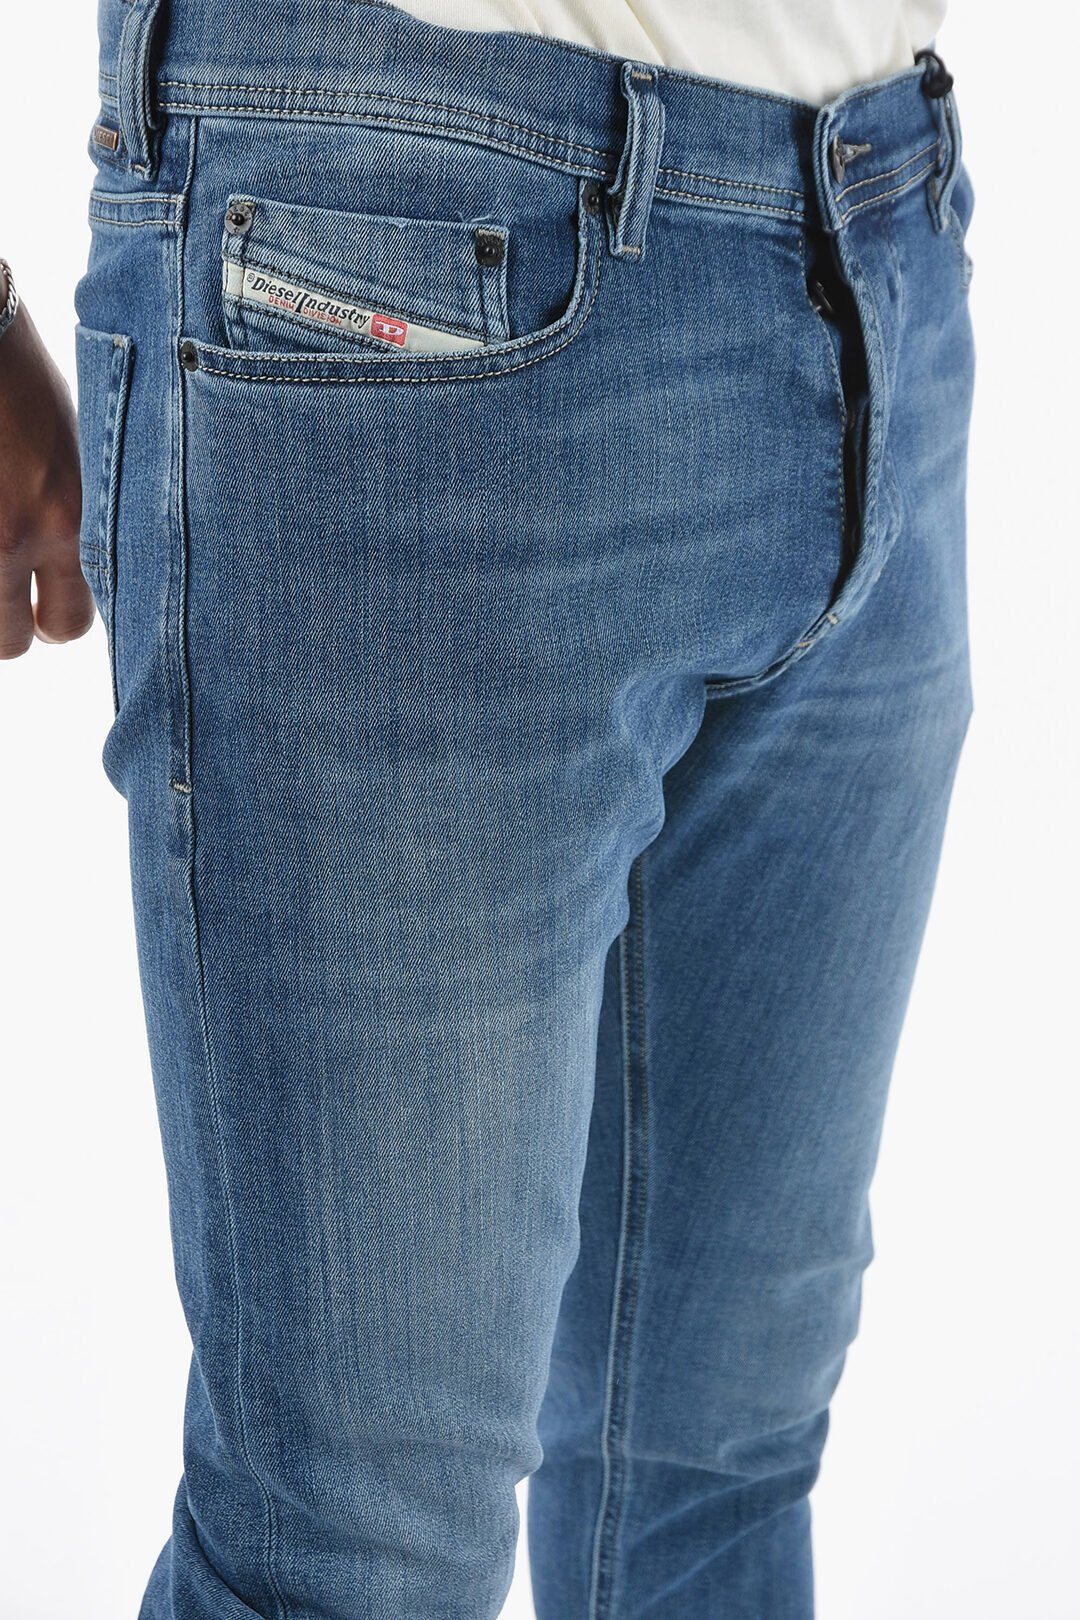 Röhrenjeans, Diesel Tepphar 5 Pocket-Style, Diesel Stretch 0857P Jeans Slim-fit-Jeans Blau, Herren